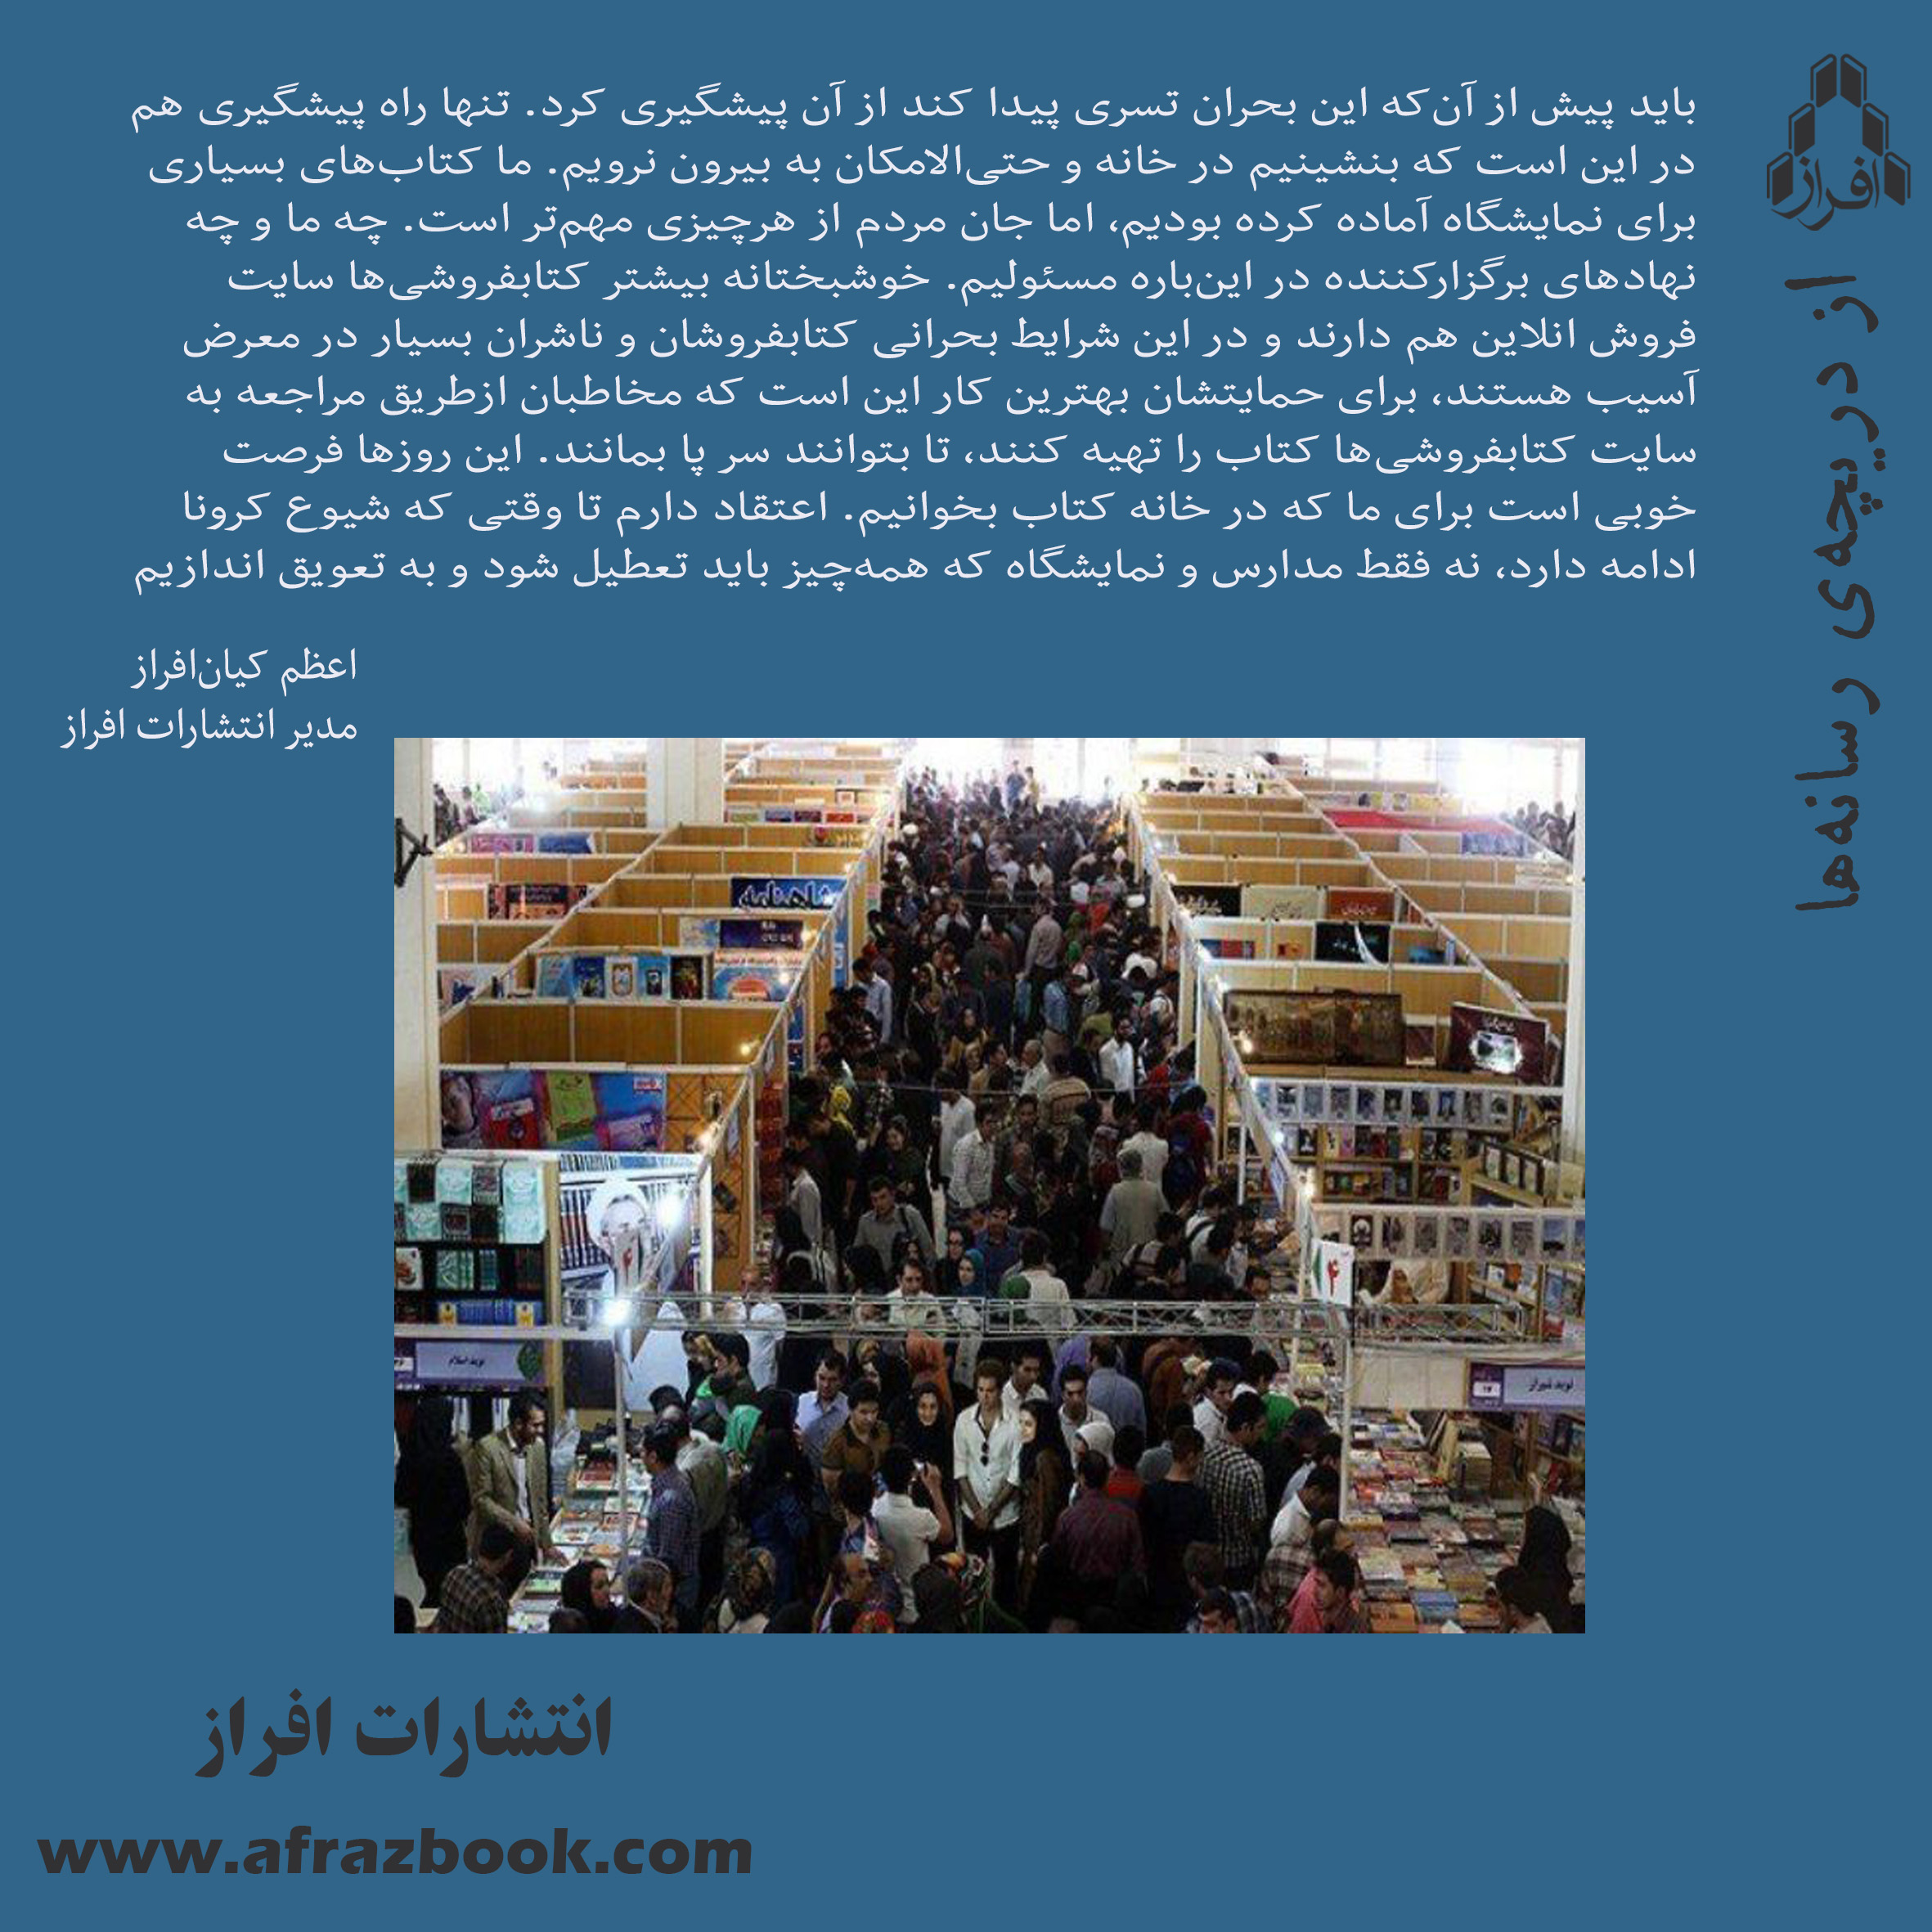 زمان برگزاری نمایشگاه کتاب تهران به تعویق افتاد